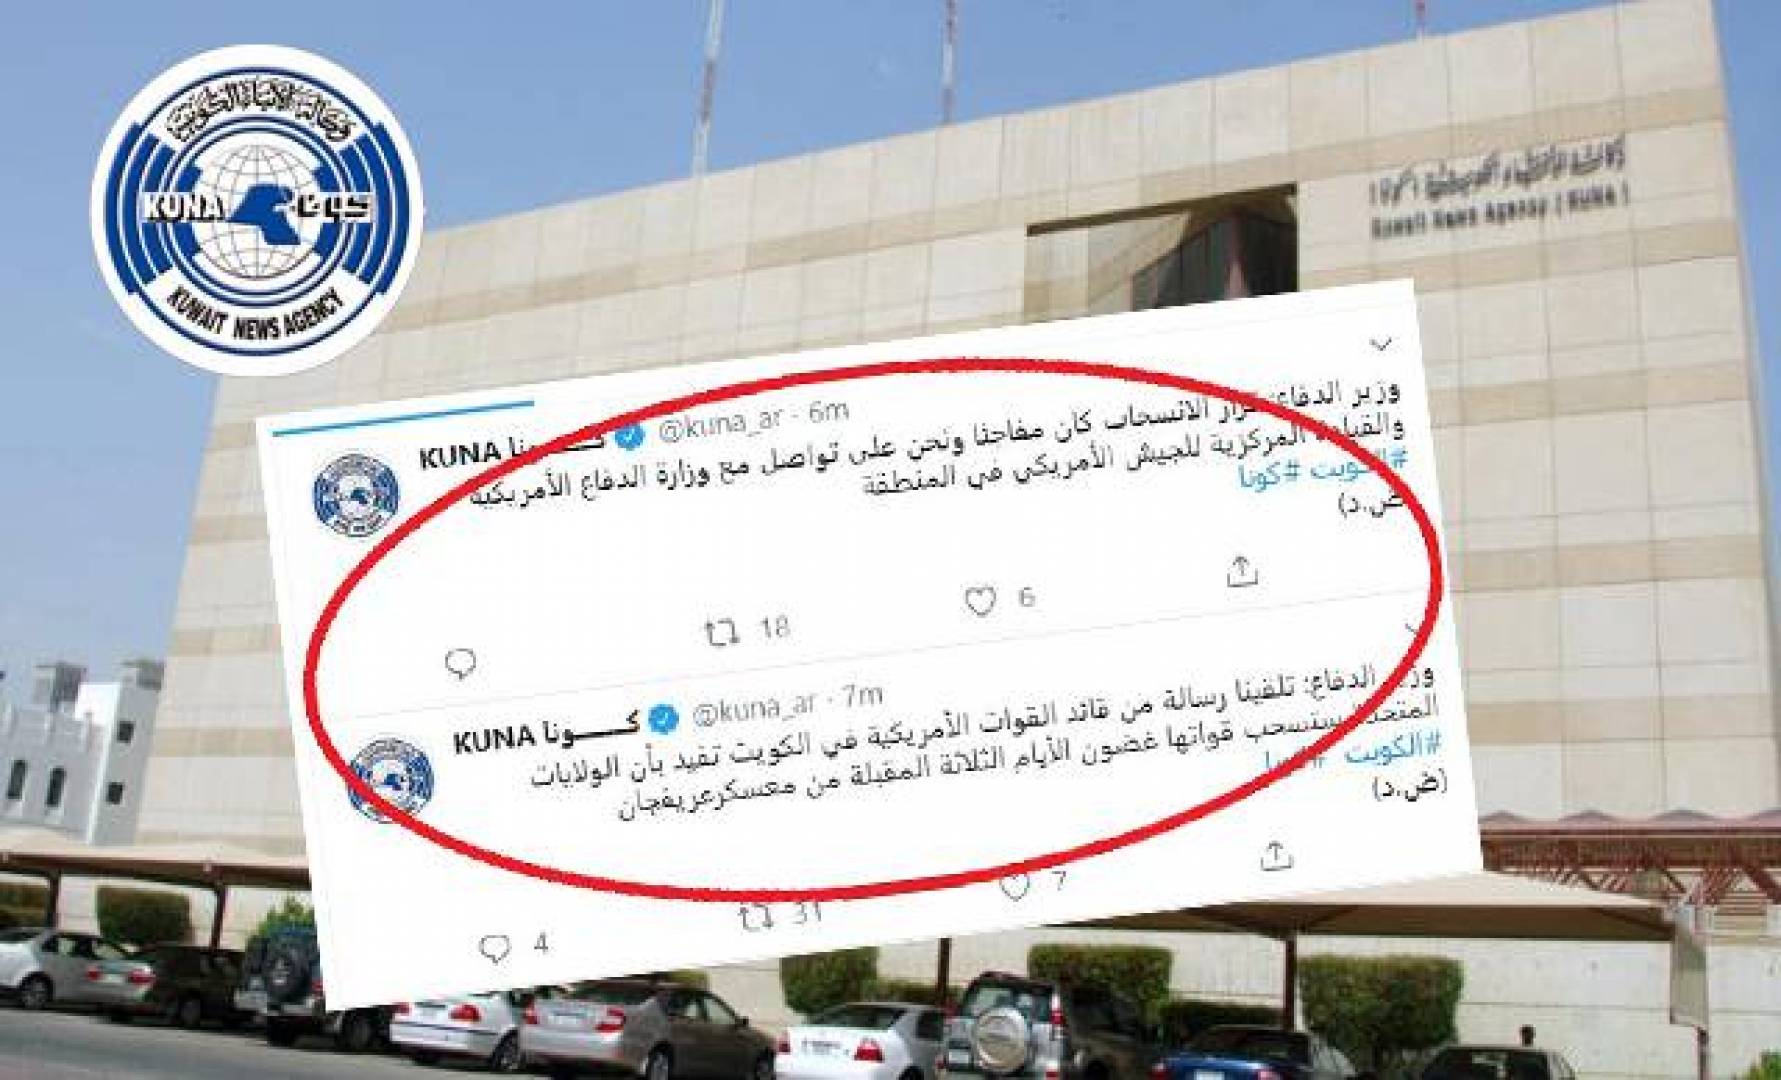 مصدر مطلع لـ«القبس الإلكتروني»: اختراق حساب وكالة الأنباء الكويتية «كونا» على «تويتر»